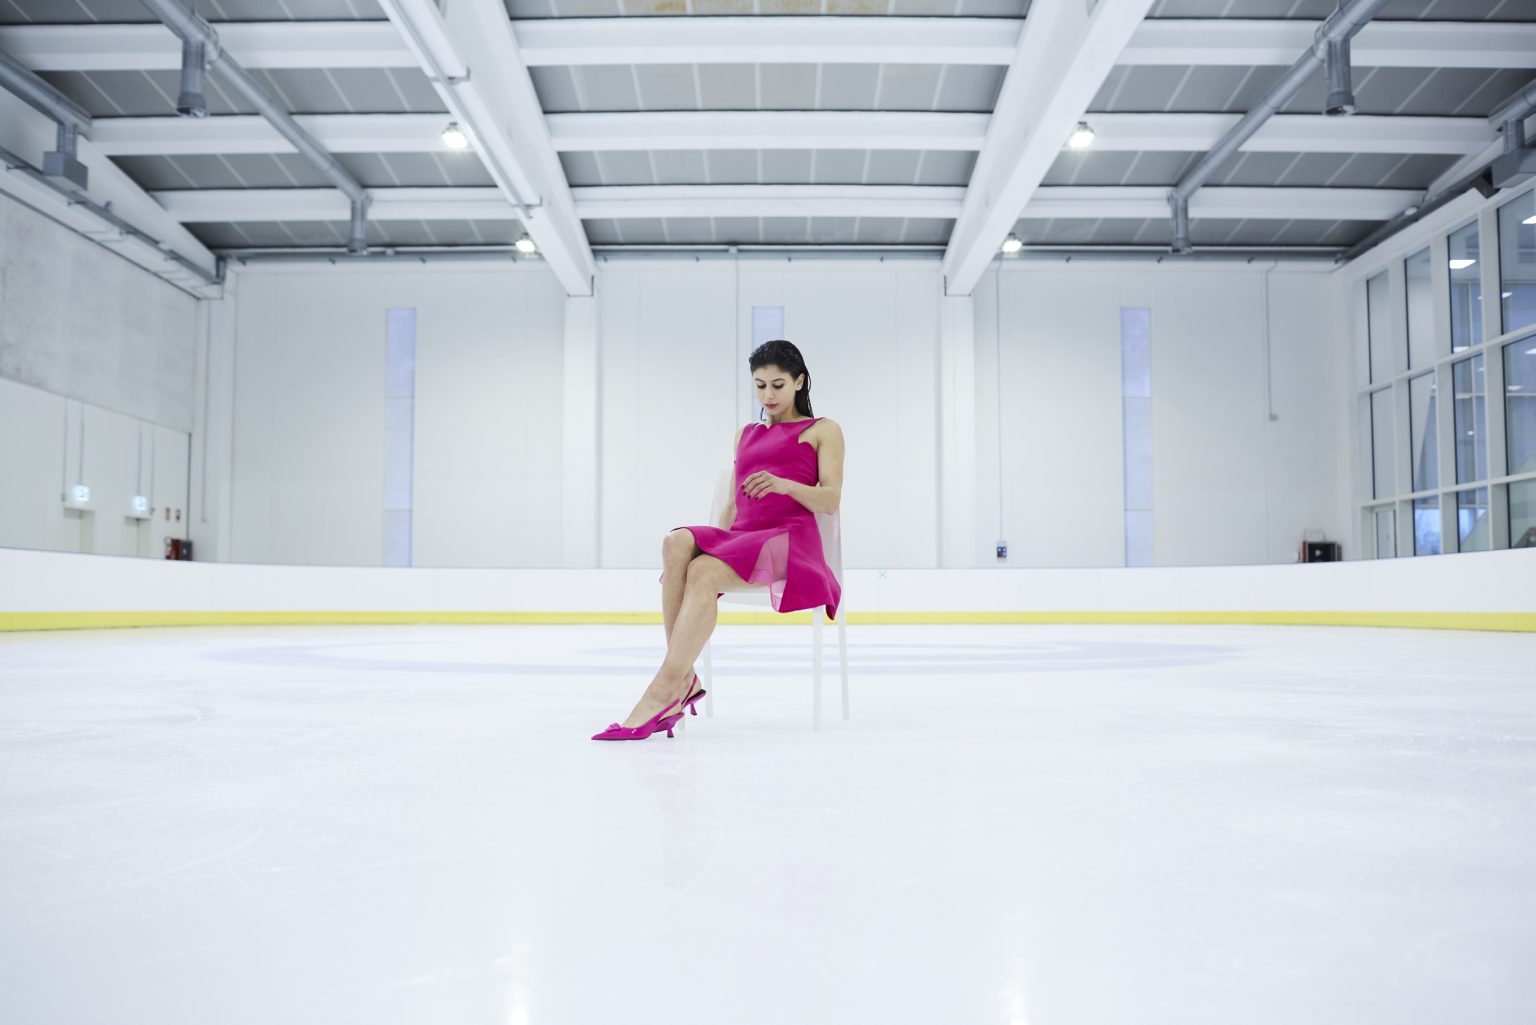 Rebecca Ghilardi, pattinatrice, skater, sportiva, bergamo, ghiaccio, ice, ritratto, portrait, sport, Italy, Italia, pattinaggio, skating, figure skating, pattinaggio artistico